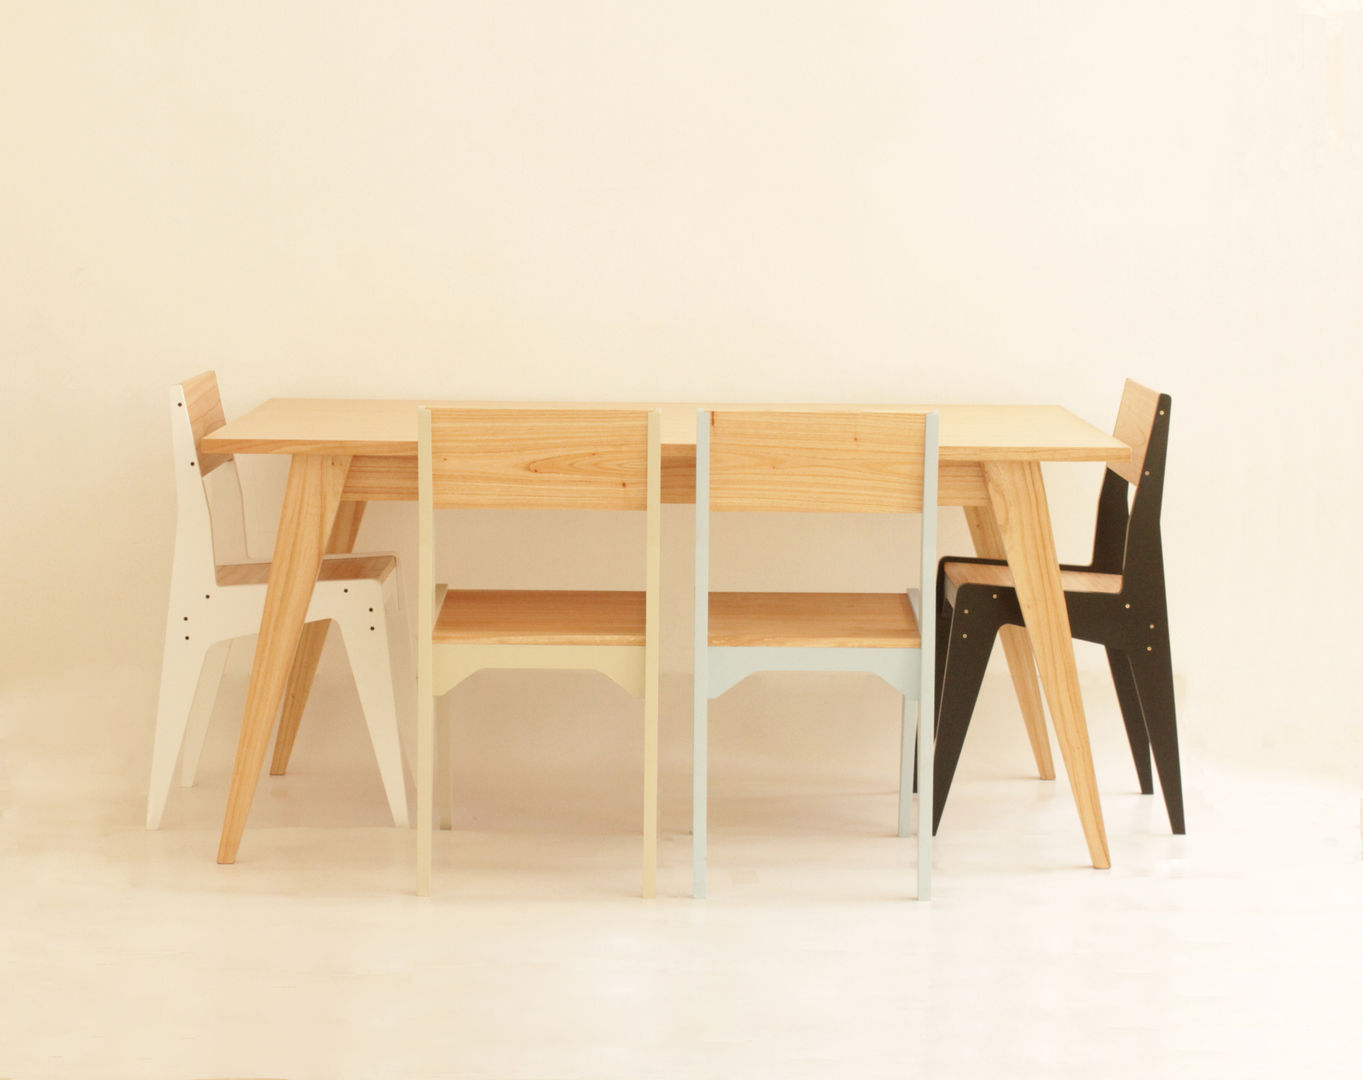 Silla Organic, Debute Muebles Debute Muebles Comedores de estilo moderno Accesorios y decoración